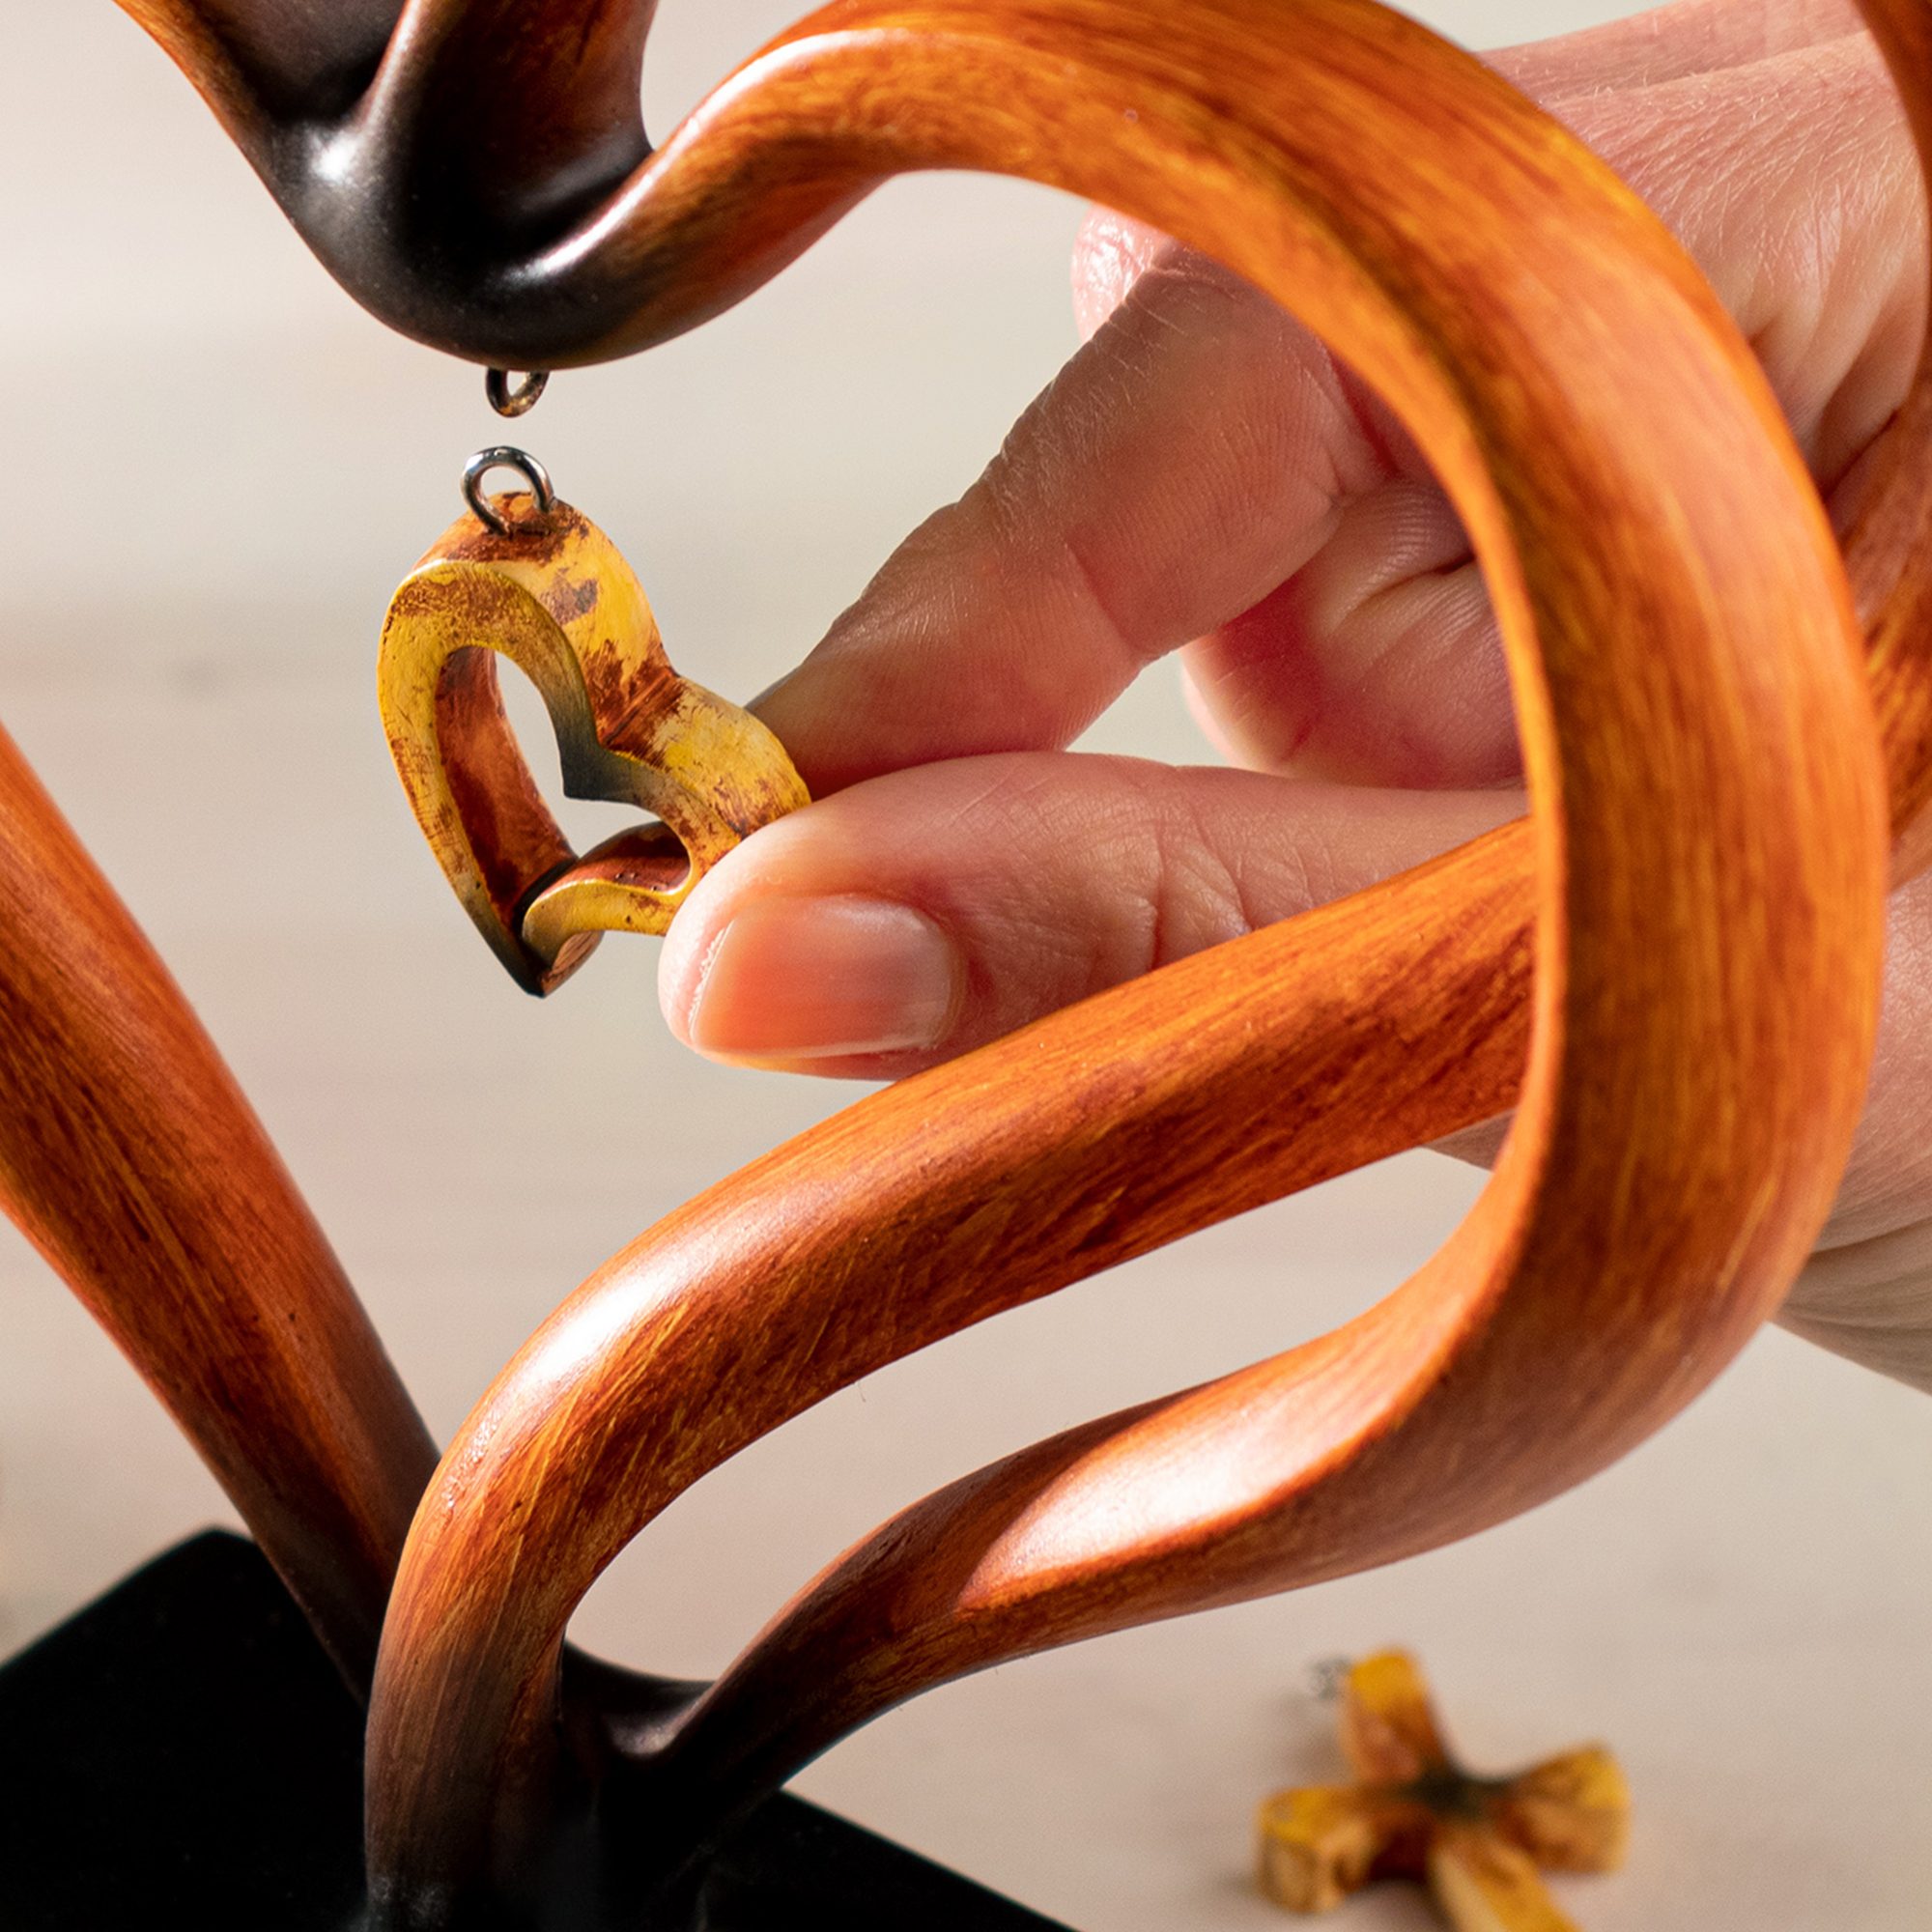 Personalisierte Holz Herz Skulptur zur Konfirmation